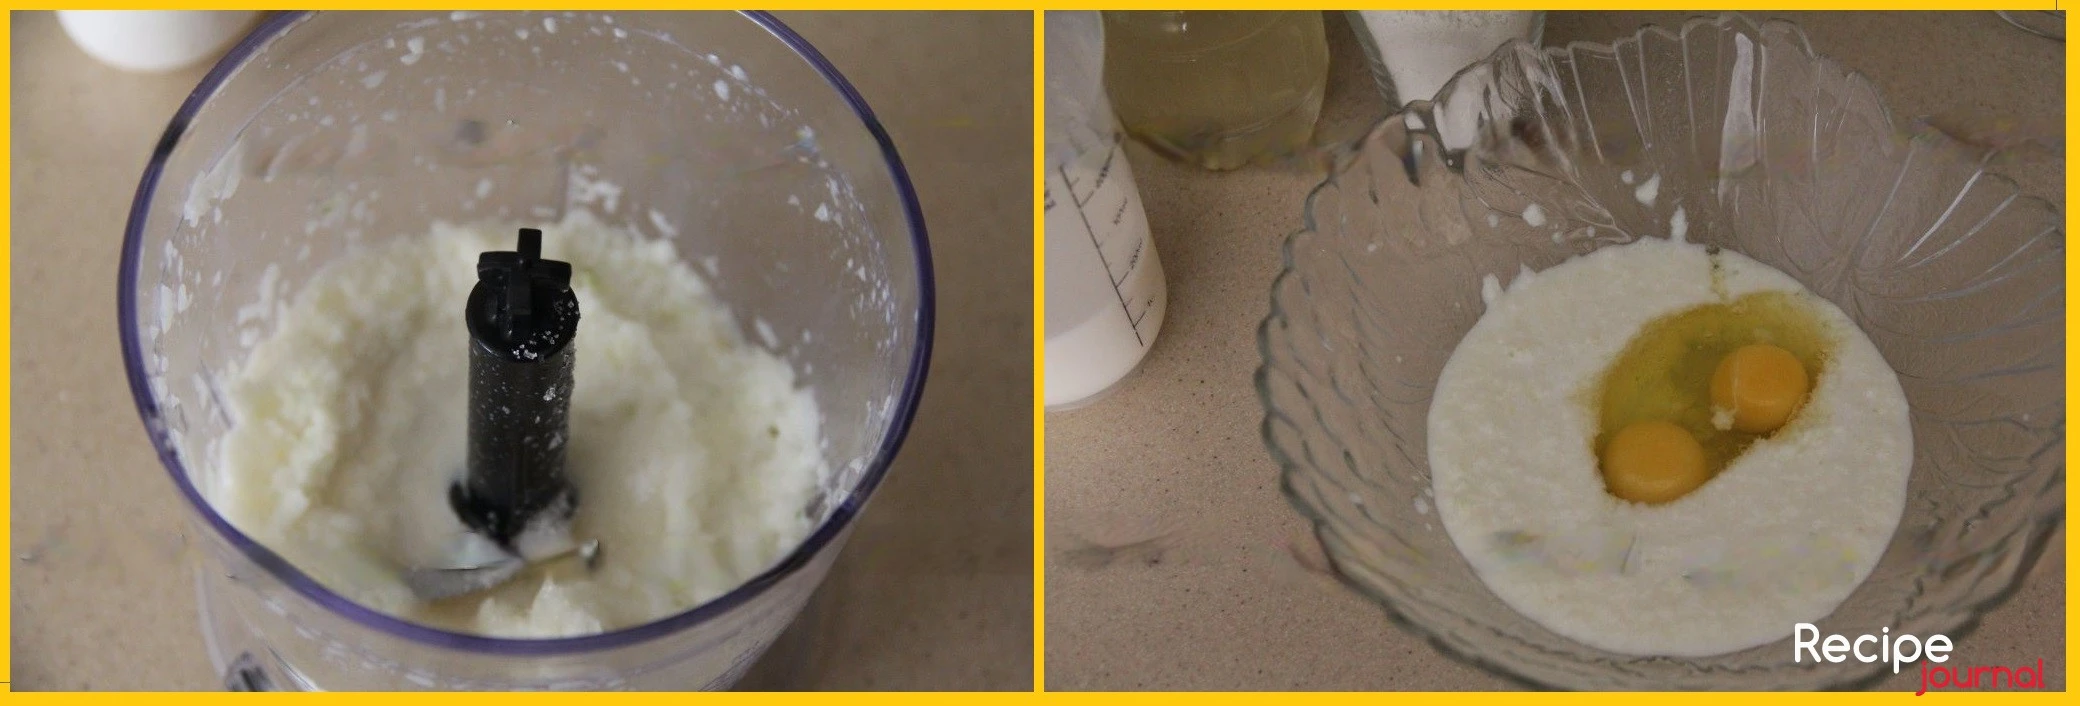 Добавляем половину молока и измельчим до состояния пюре. Затем переливаем пюре в миску и добавляем яйца, перемешиваем.